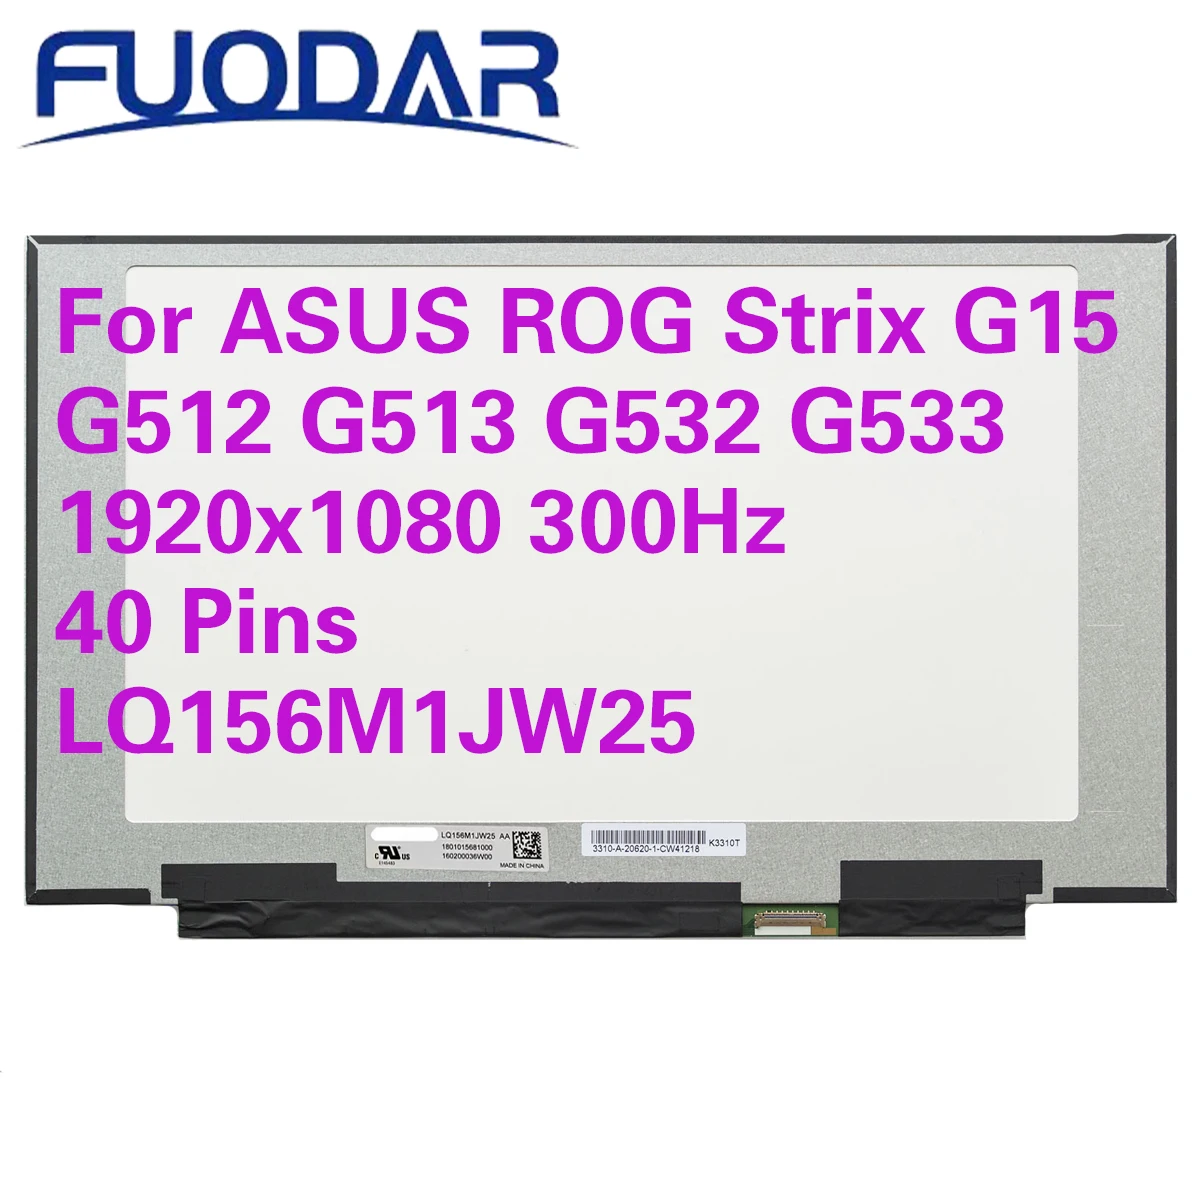 

ЖК-экран для ноутбука ASUS ROG Strix G15 G512 G513 G532 G533 15,6 дюйма 300 Гц, LQ156M1JW251920x1080, игровая панель дисплея 300 Гц, 40 контактов